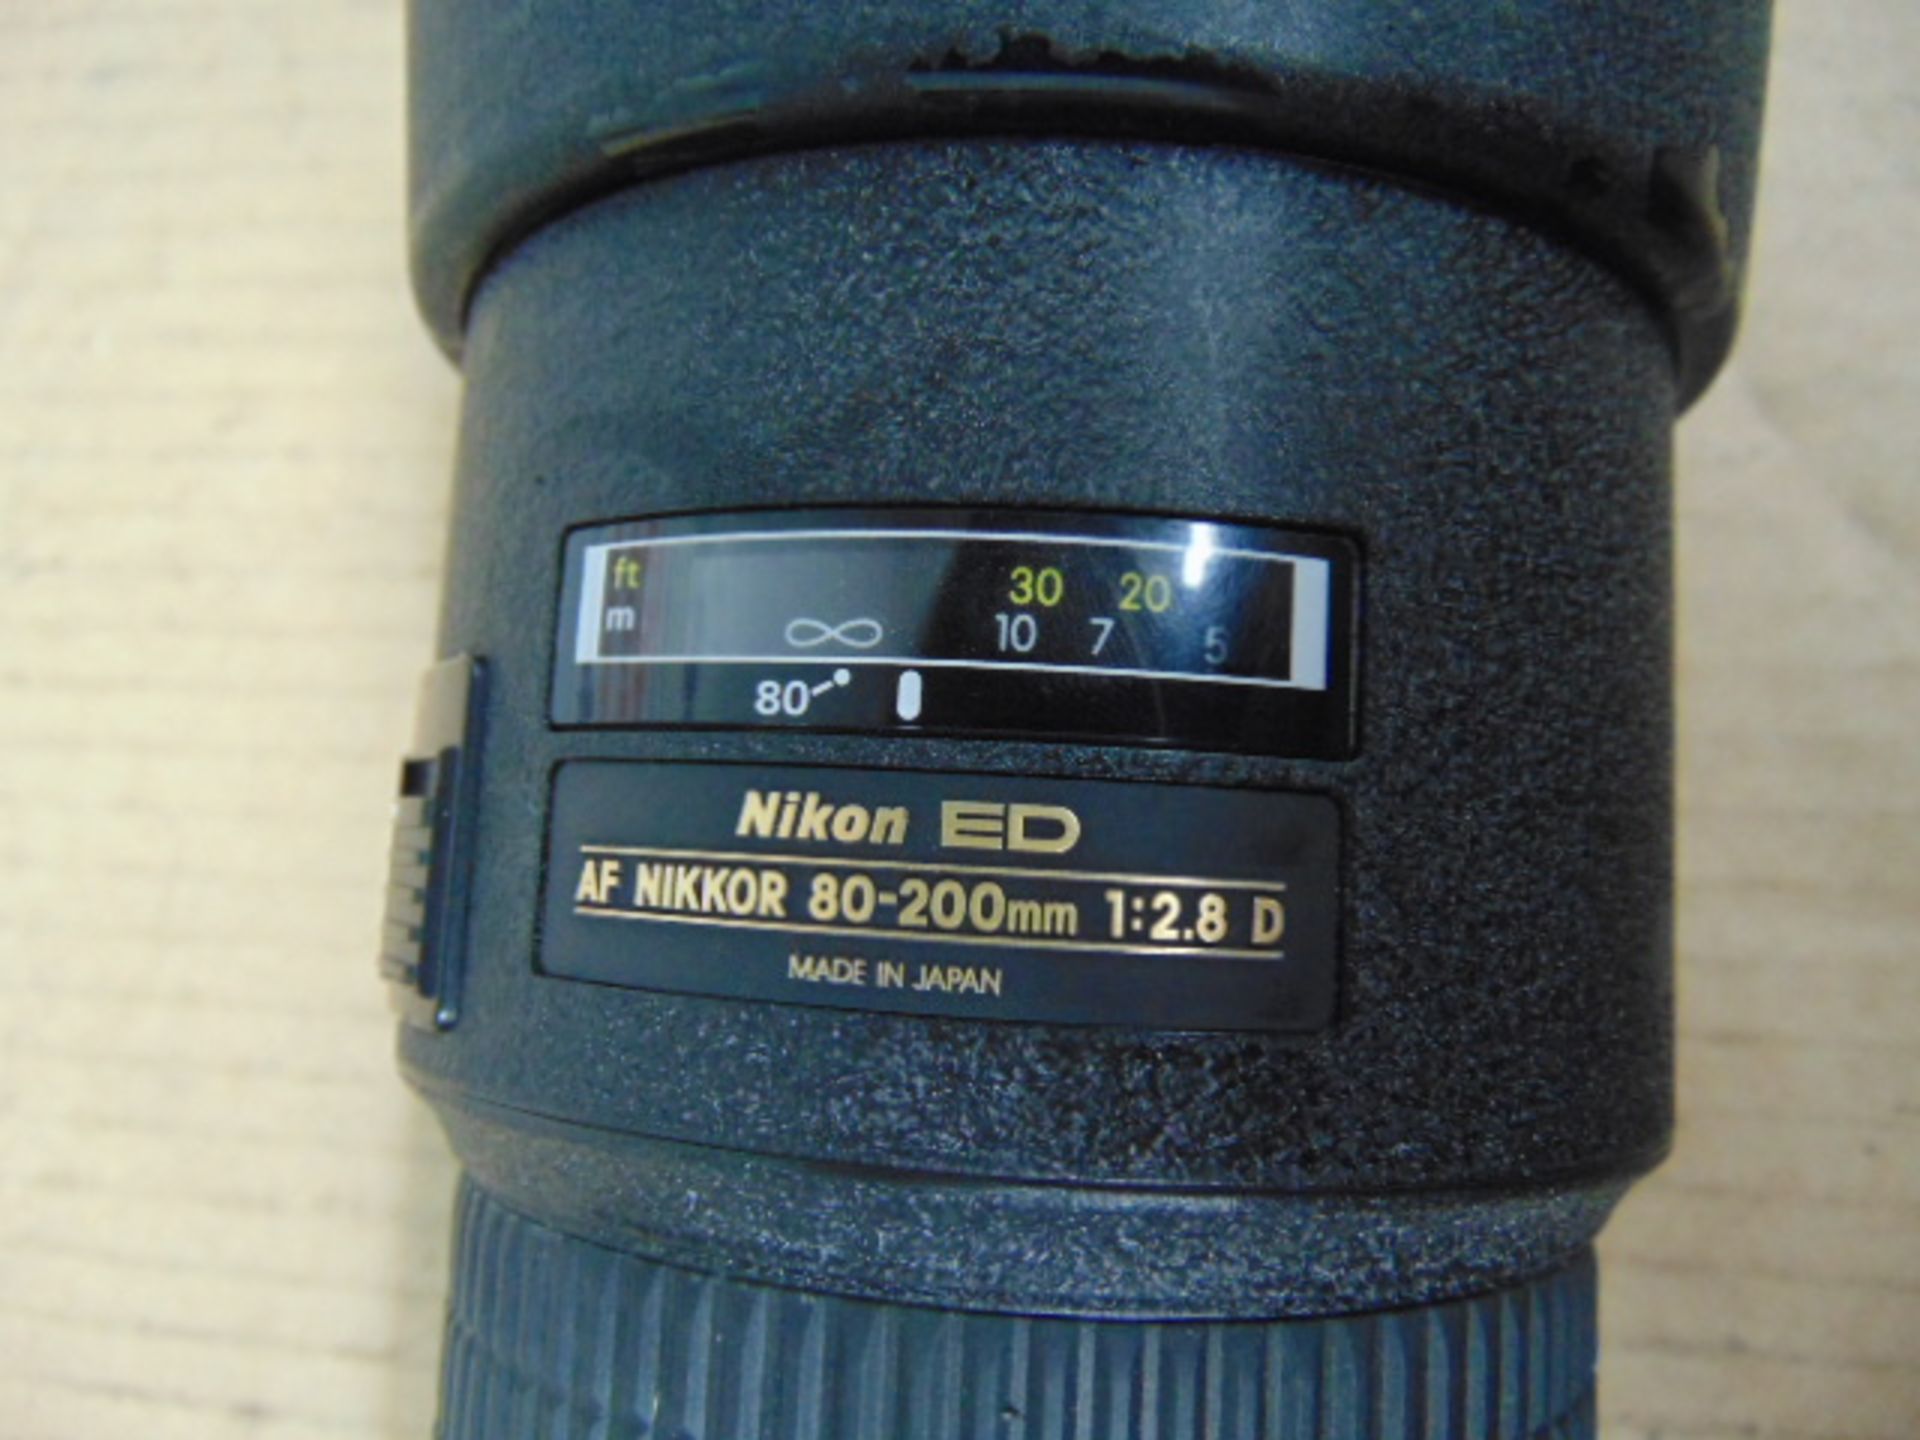 Nikon ED AF Nikkor 80-200mm 1:2.8 D Lense with Leather Carry Case - Image 6 of 11